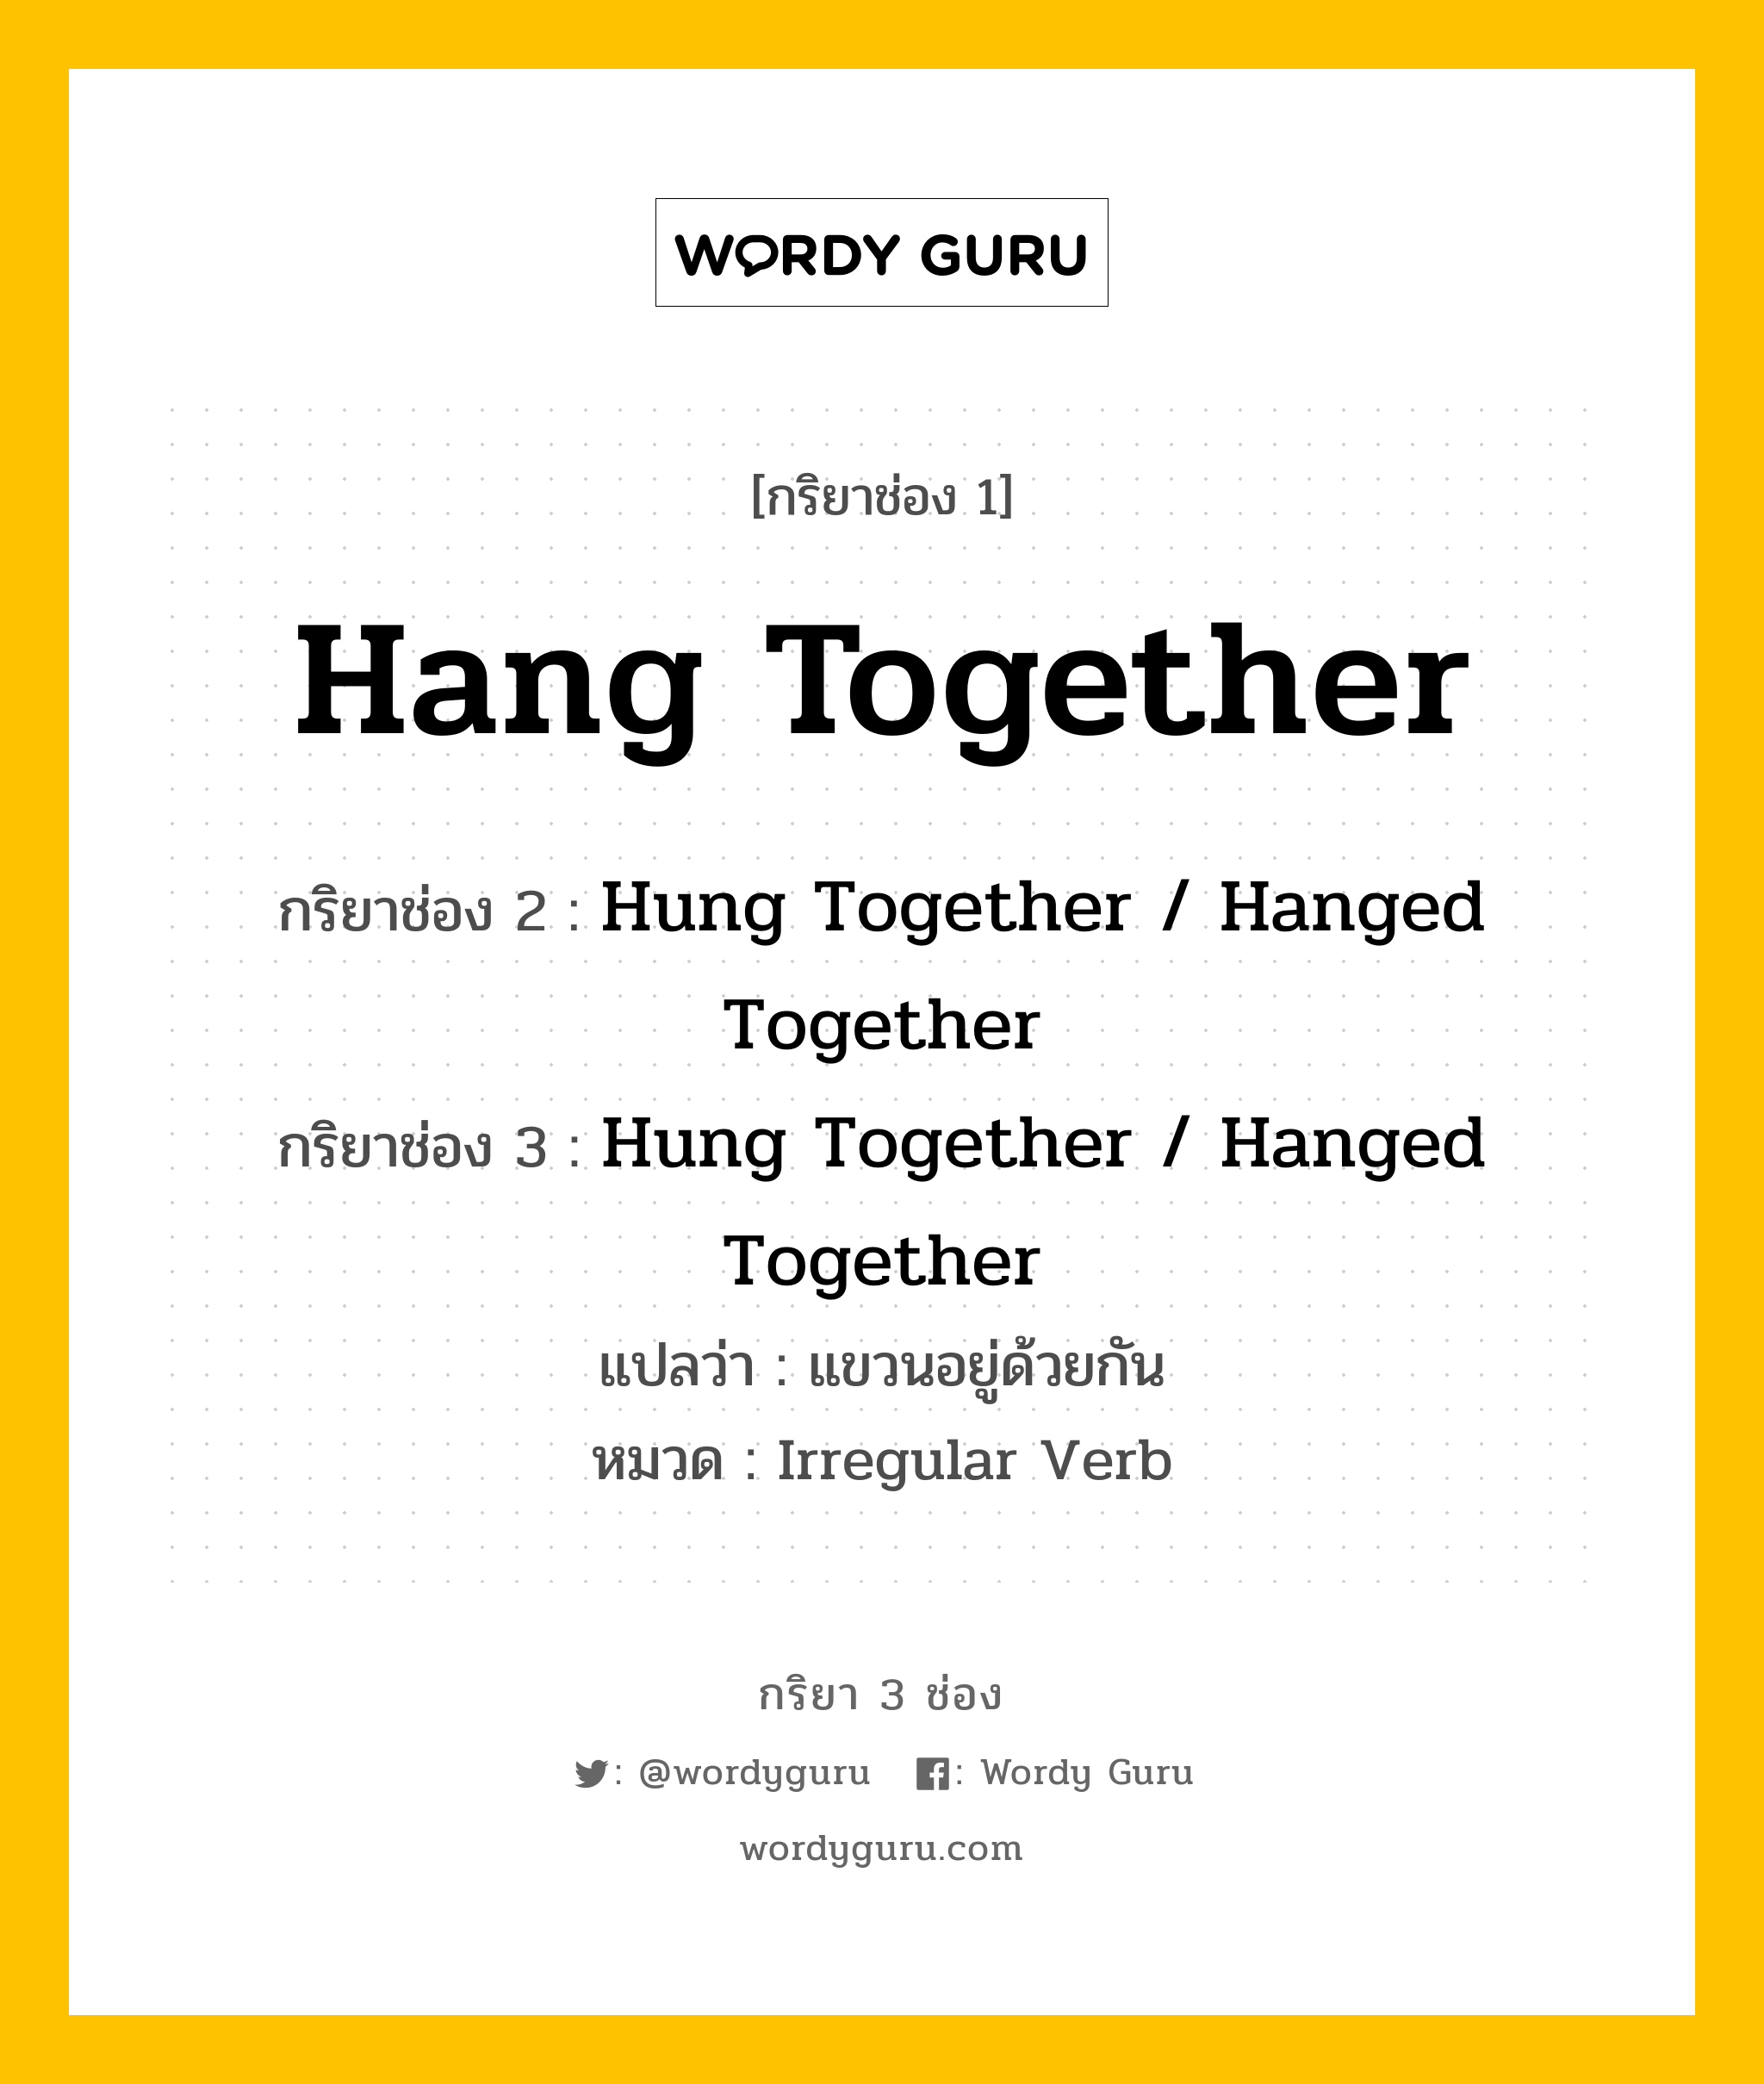 กริยา 3 ช่อง: Hang Together ช่อง 2 Hang Together ช่อง 3 คืออะไร, กริยาช่อง 1 Hang Together กริยาช่อง 2 Hung Together / Hanged Together กริยาช่อง 3 Hung Together / Hanged Together แปลว่า แขวนอยู่ด้วยกัน หมวด Irregular Verb หมวด Irregular Verb